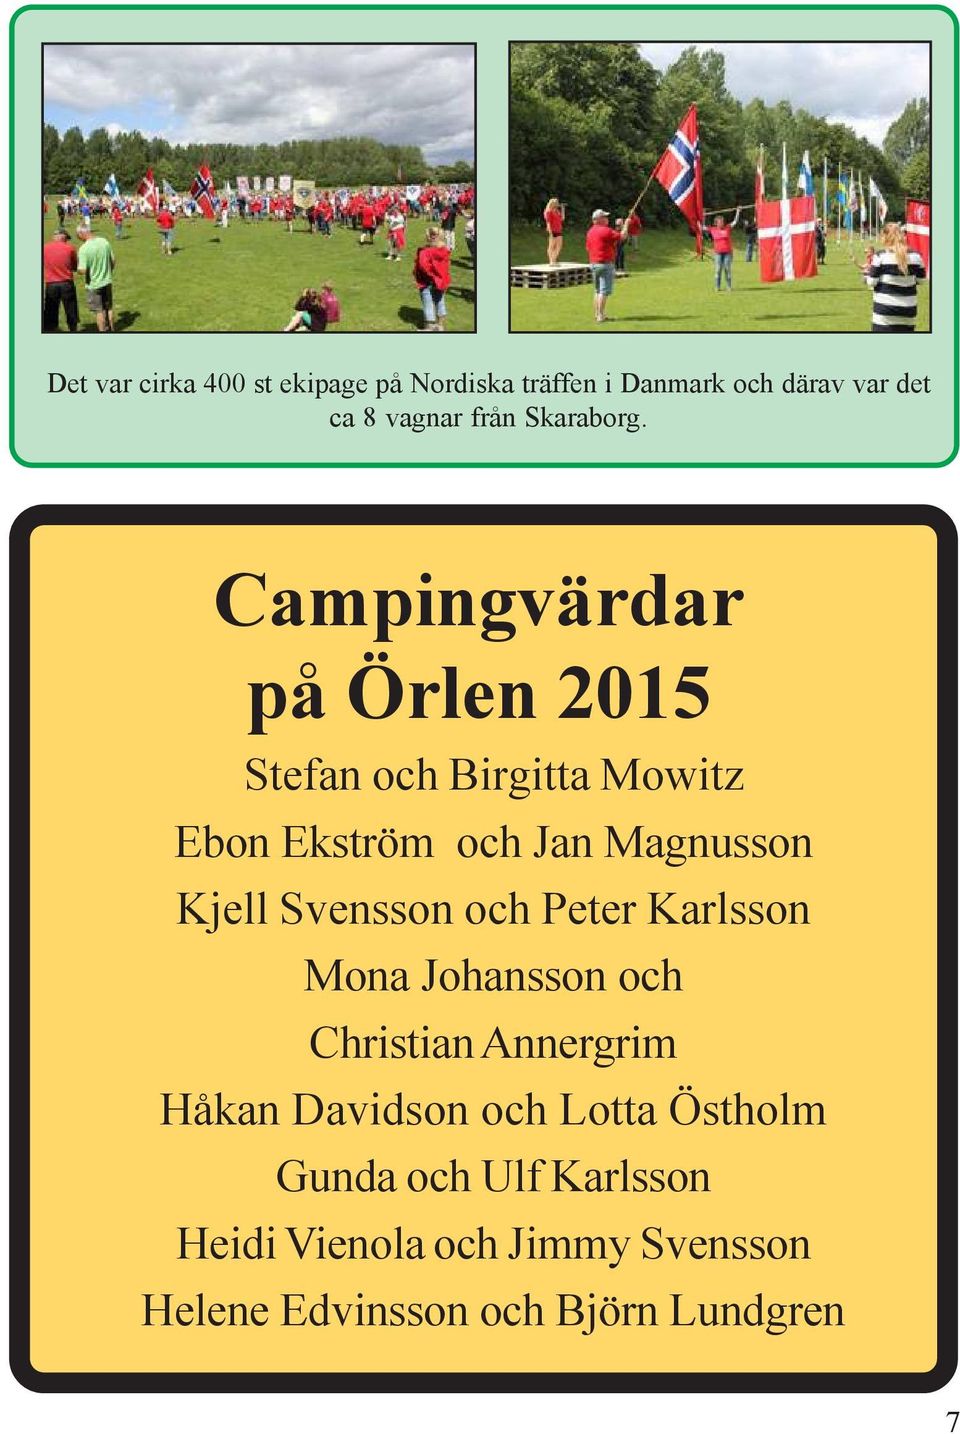 Campingvärdar på Örlen 2015 Stefan och Birgitta Mowitz Ebon Ekström och Jan Magnusson Kjell